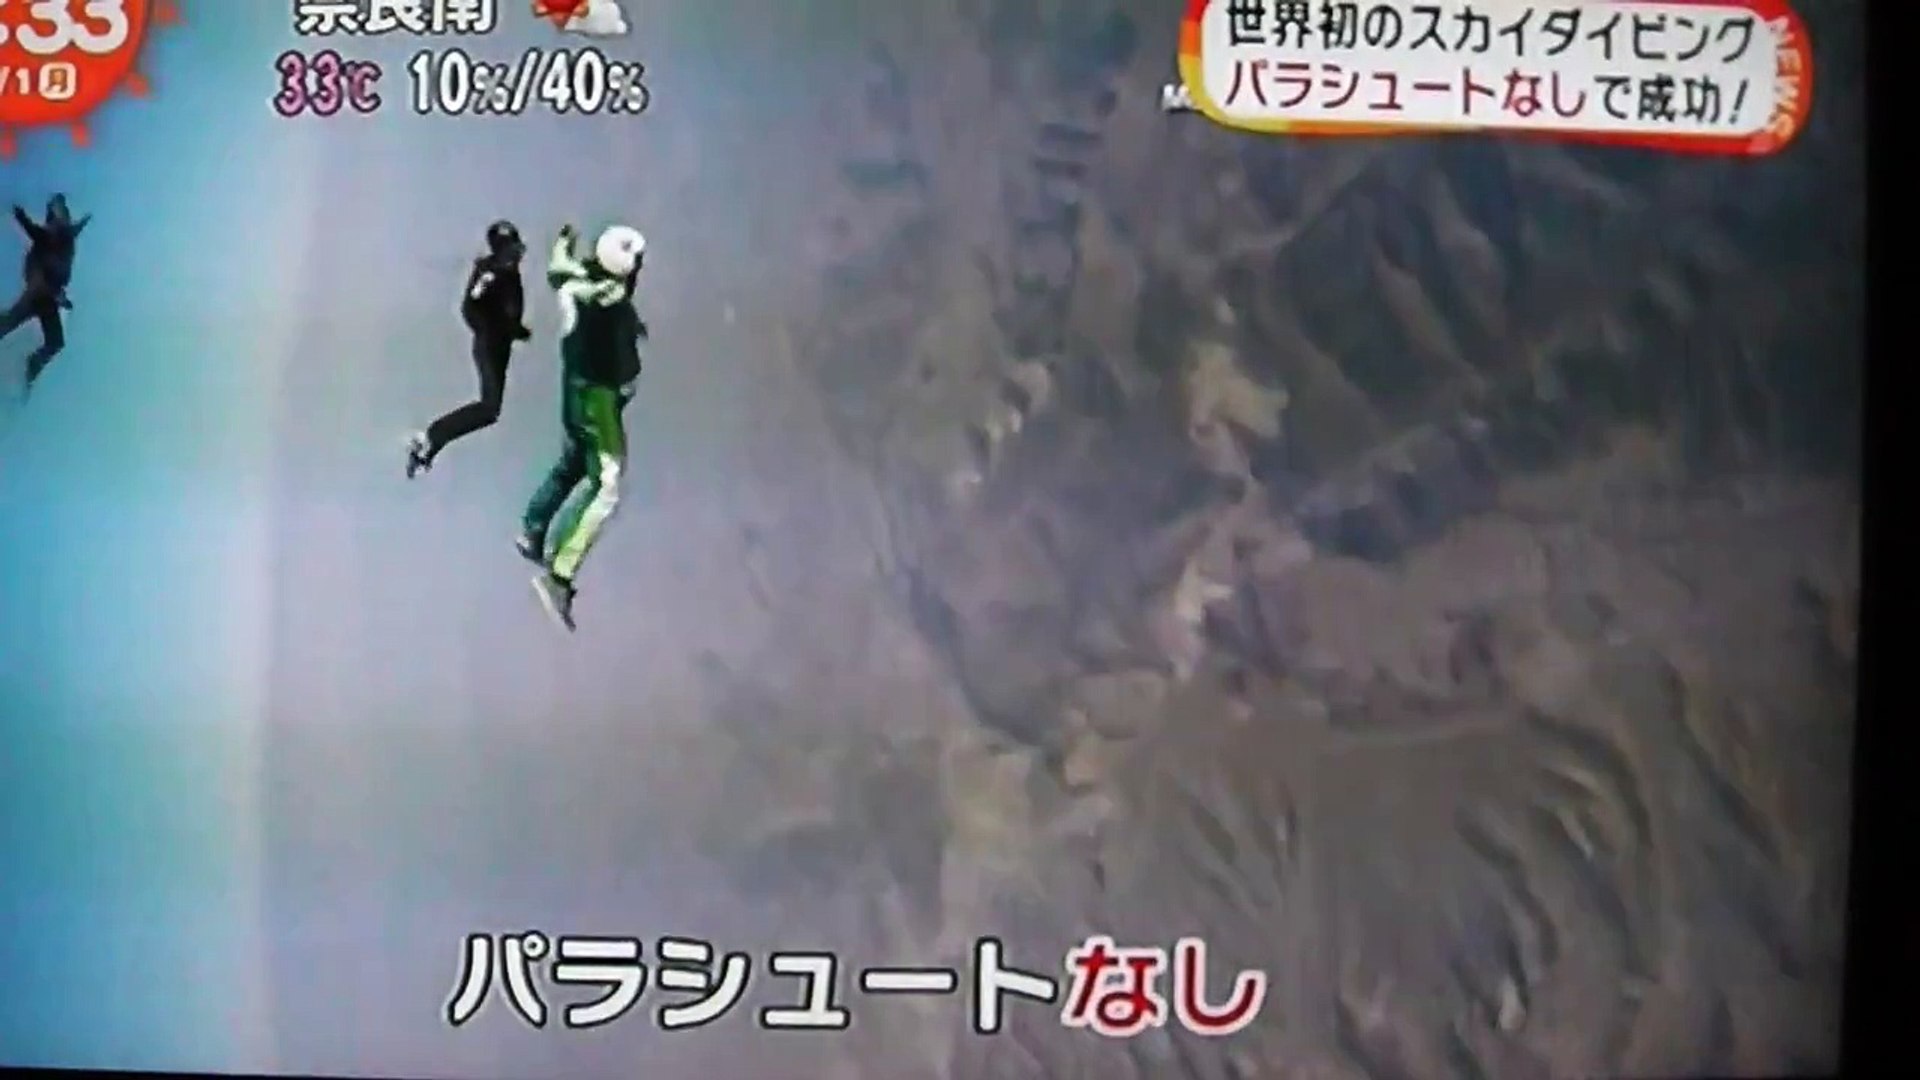 世界初パラシュート無しのスカイダイビングに成功 7600mから落下したのはルーク アイキンスさん 言葉が見つからないほど素晴らしかったそうだ S57sxq04rta Video Dailymotion